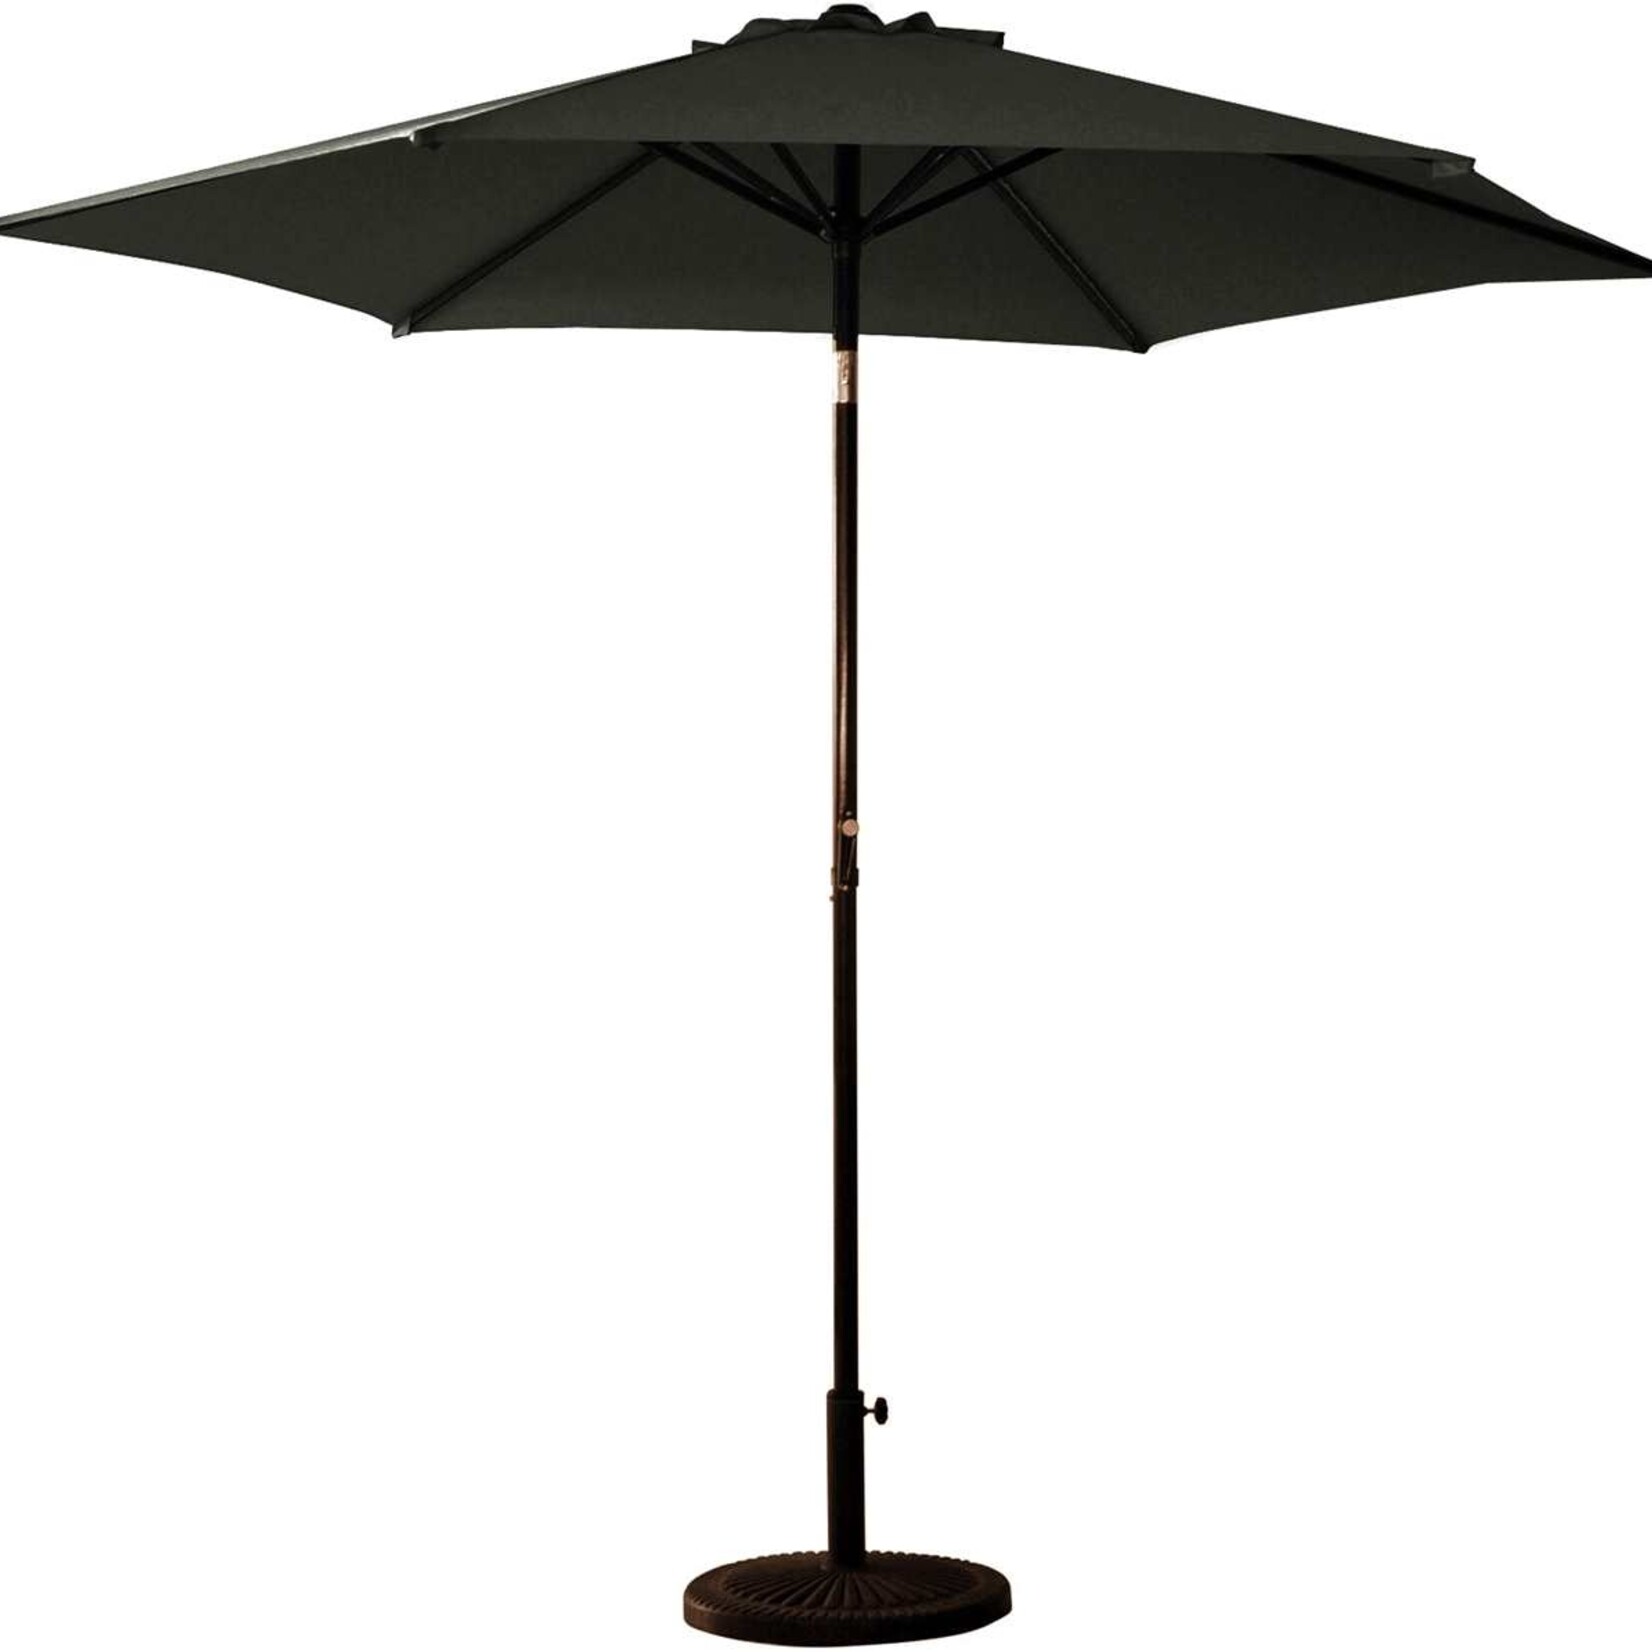 9' Aluminum Umbrella With Crank/Tilt -Onyx (Black)